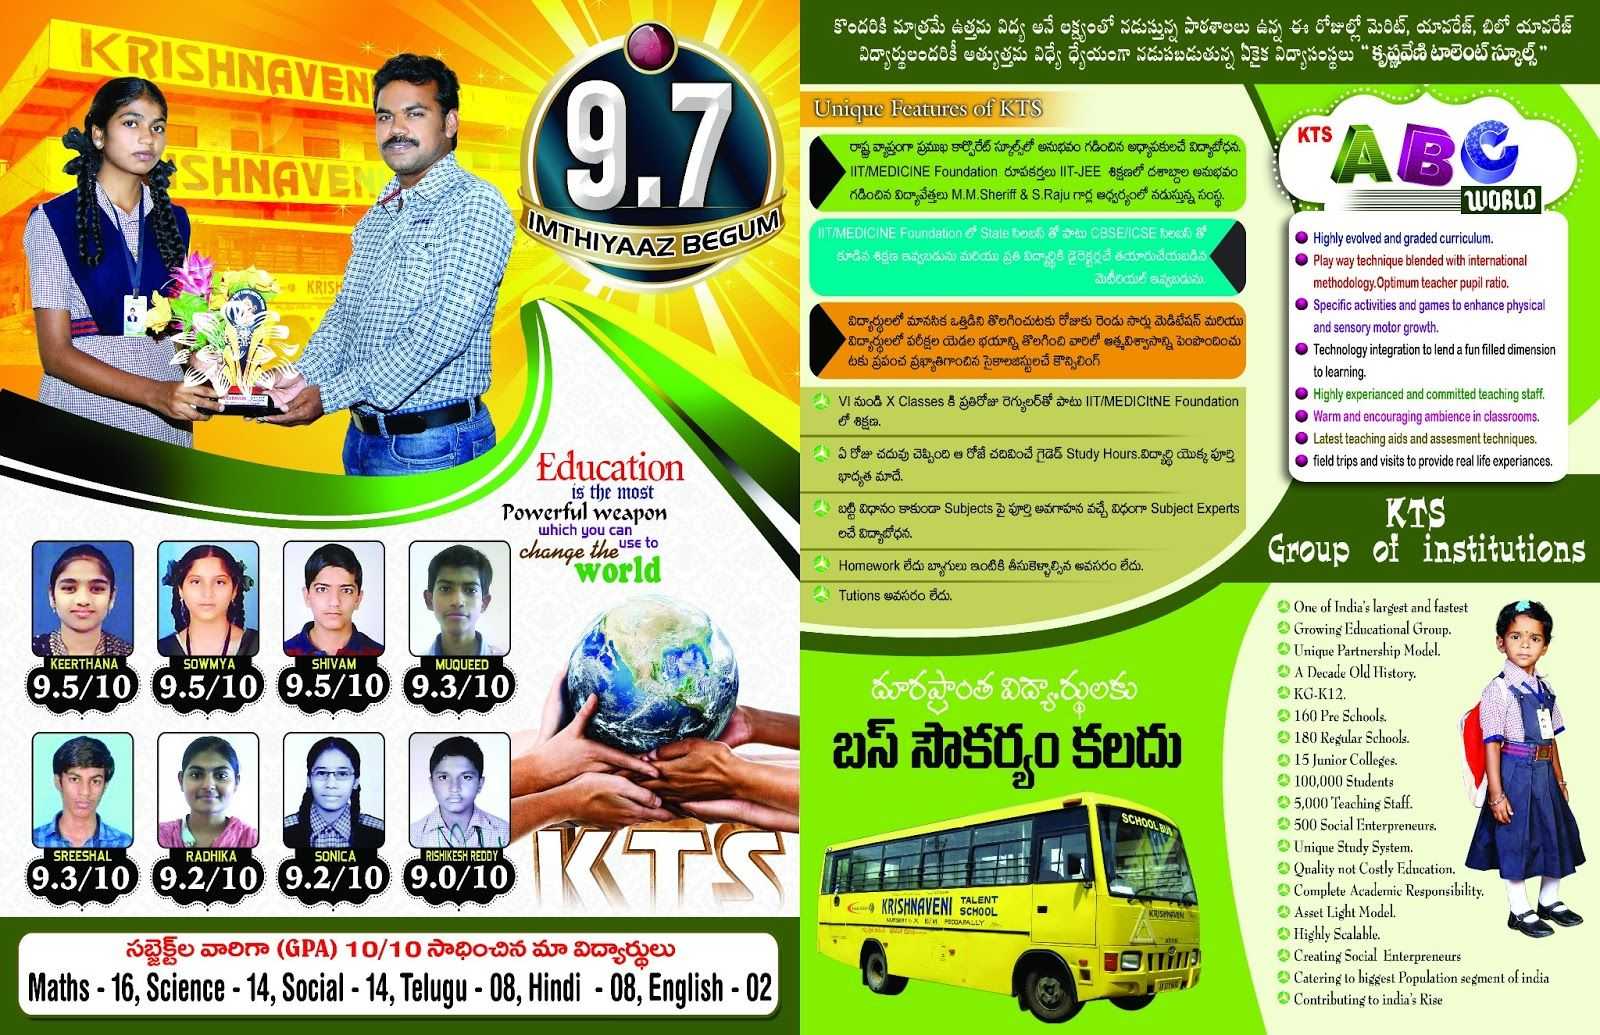 Krishnaveni School Brochure Template In 2019 | School Throughout Play School Brochure Templates